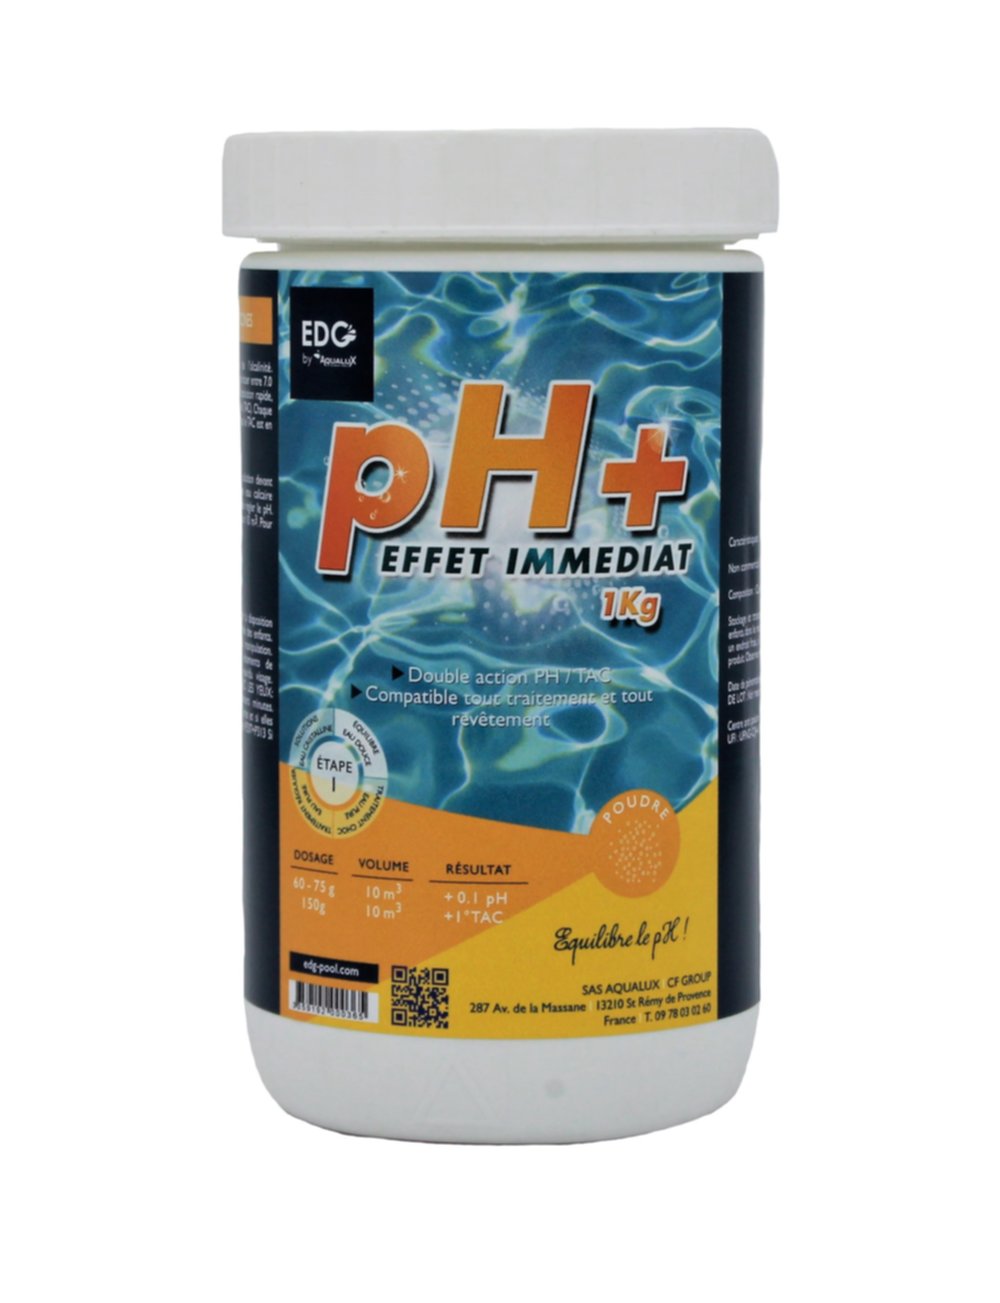 Poudre pH+ 1 kg - EDG by AQUALUX